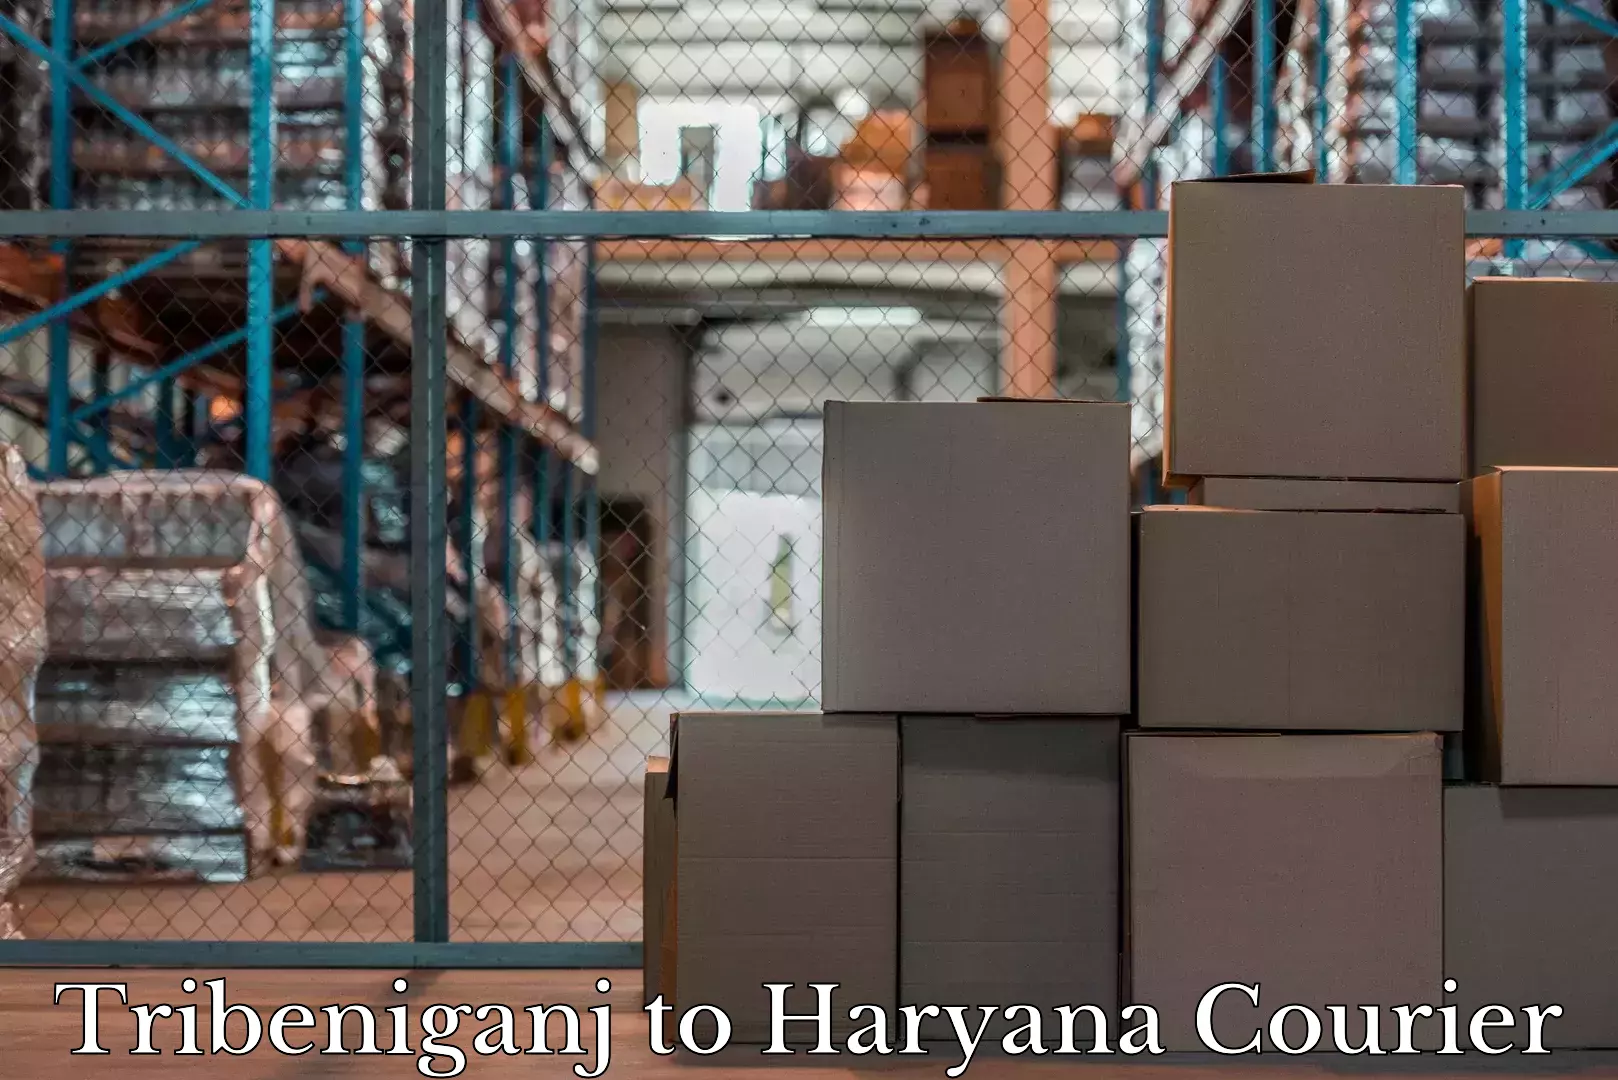 Baggage delivery estimate Tribeniganj to Haryana